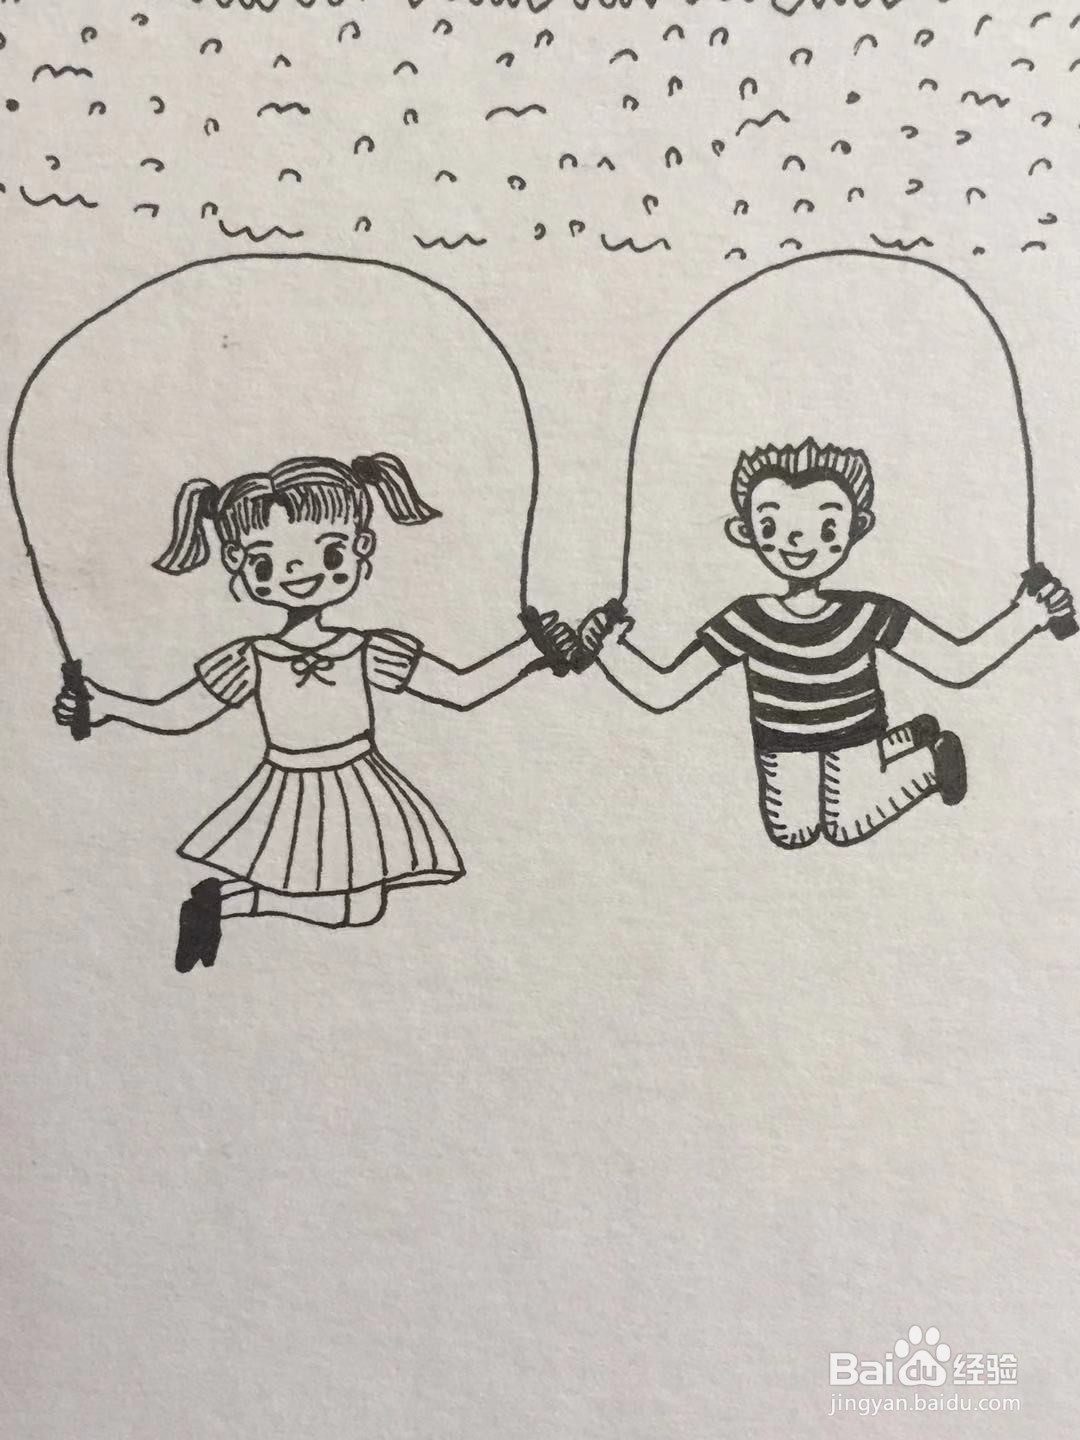 两个小朋友跳绳简笔画图片